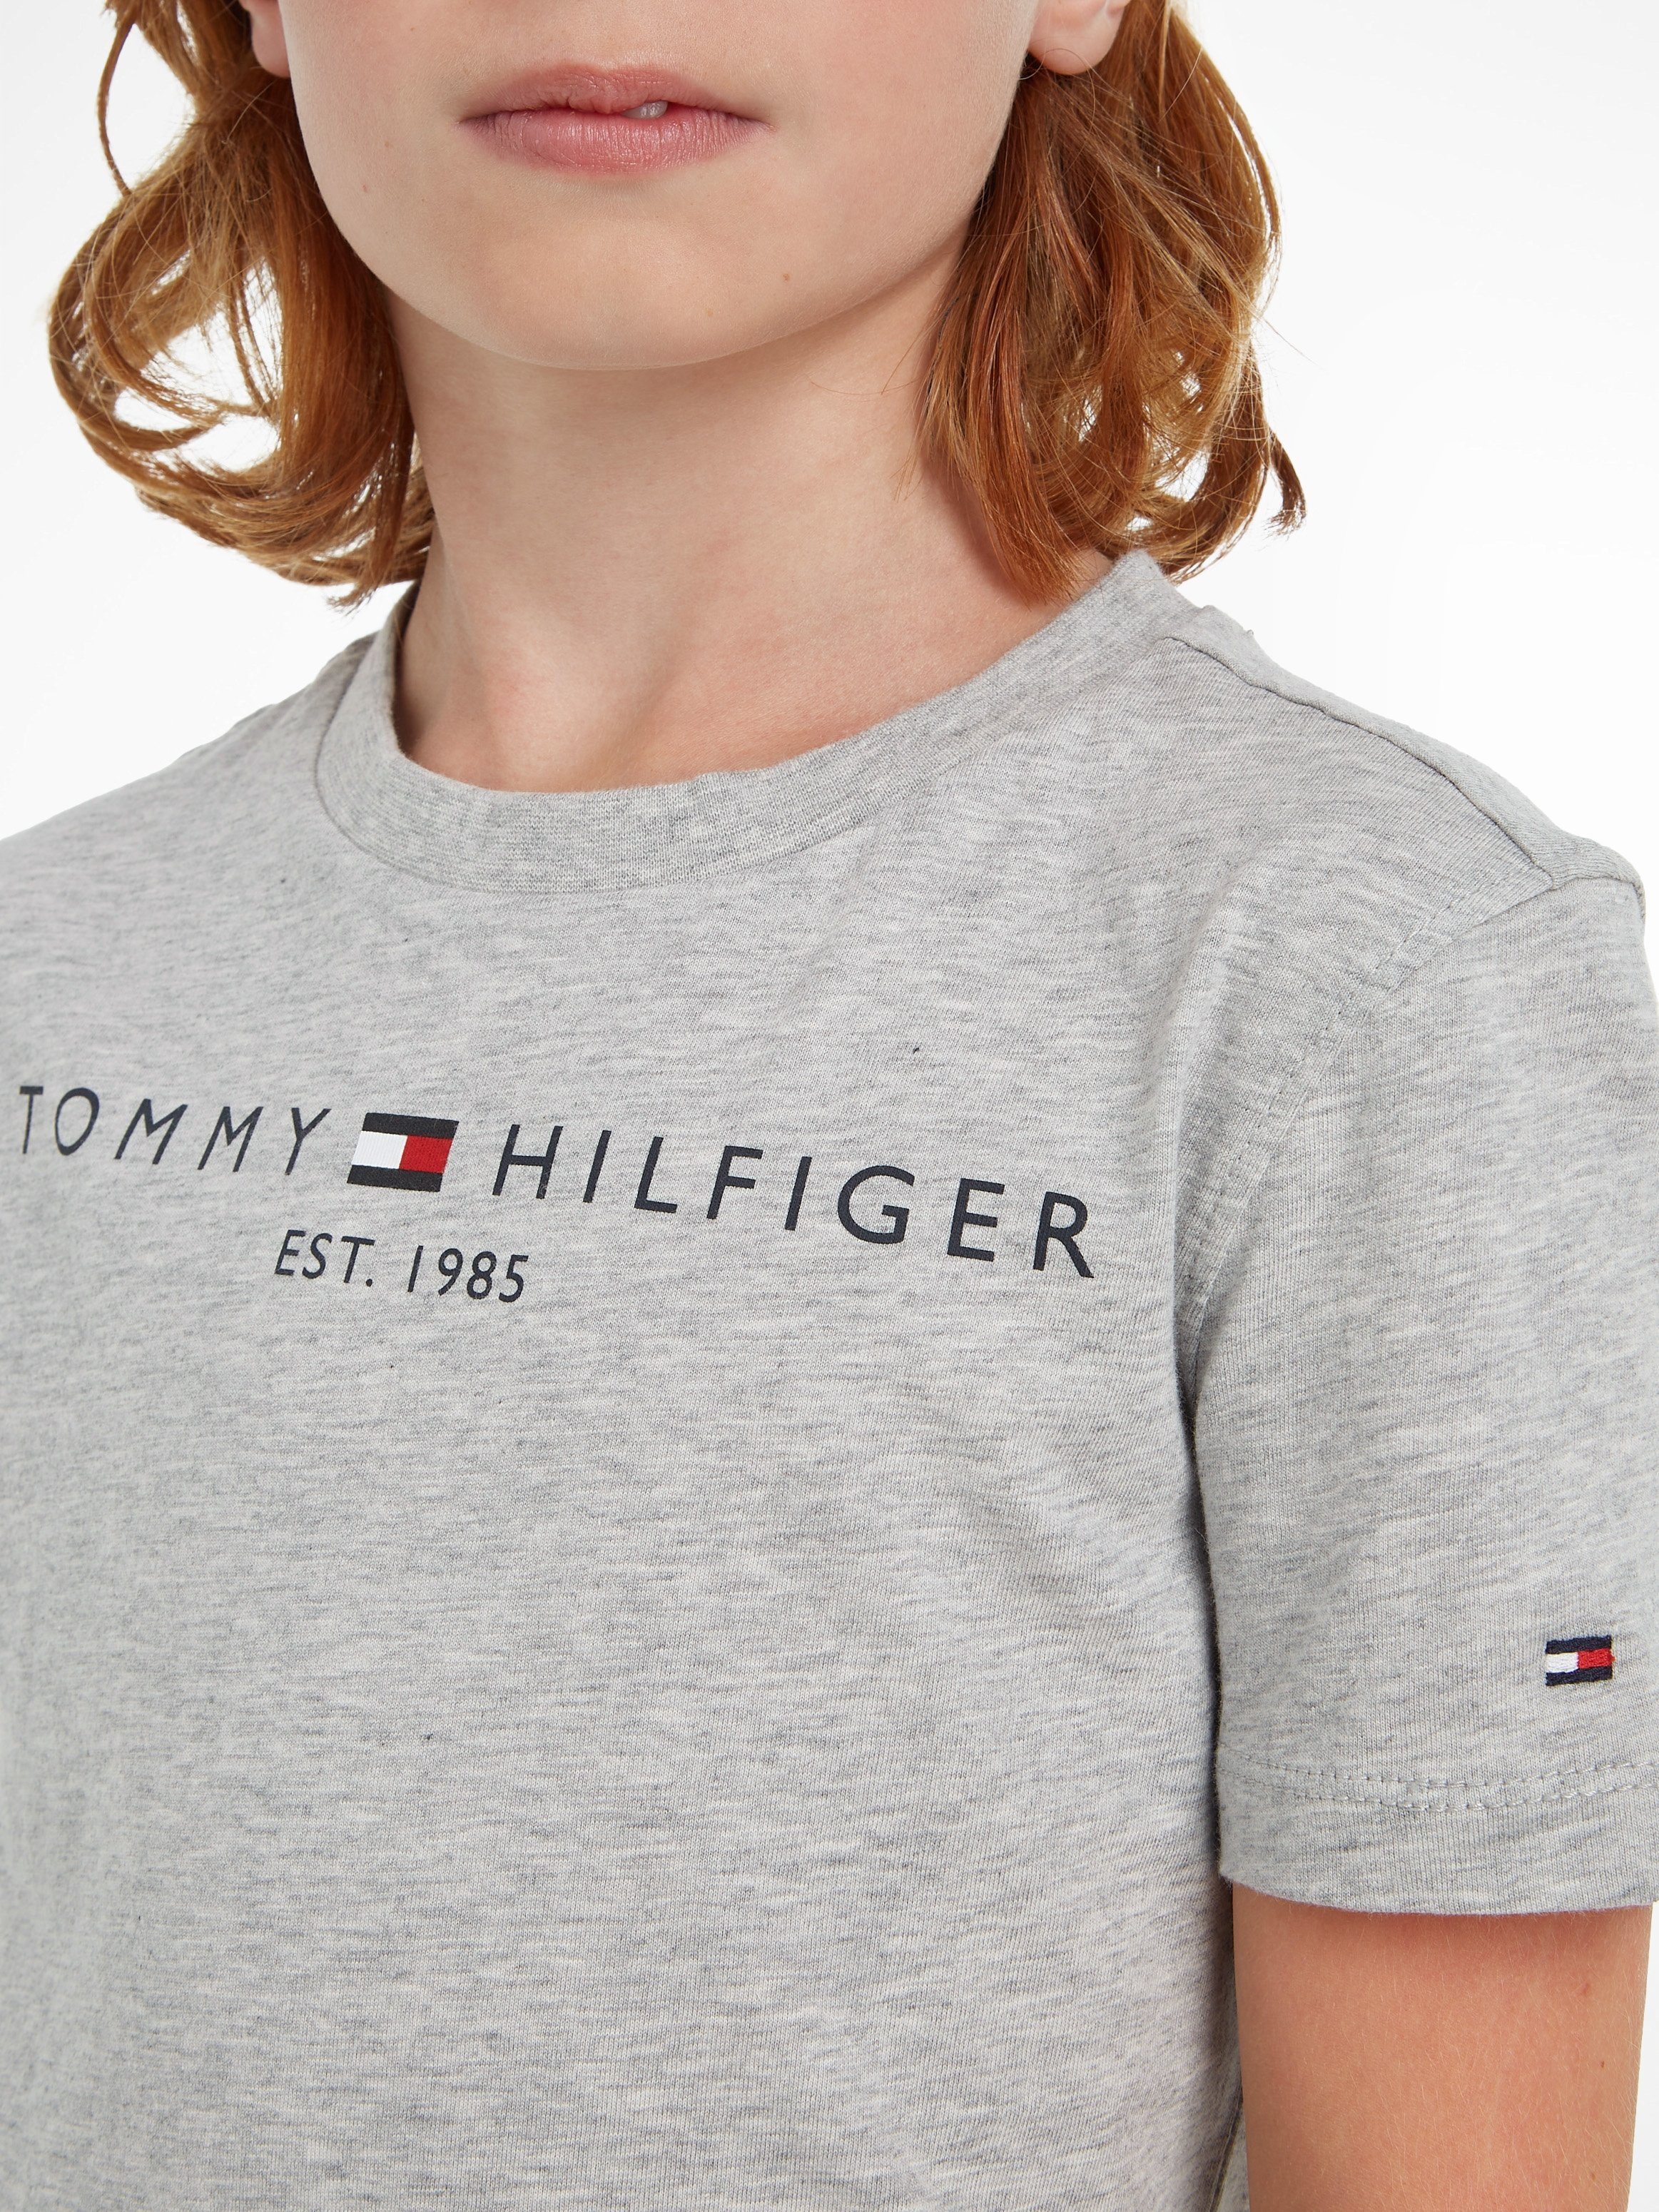 Tommy Hilfiger T-Shirt ESSENTIAL und Mädchen MiniMe,für Kids Kinder Jungen TEE Junior